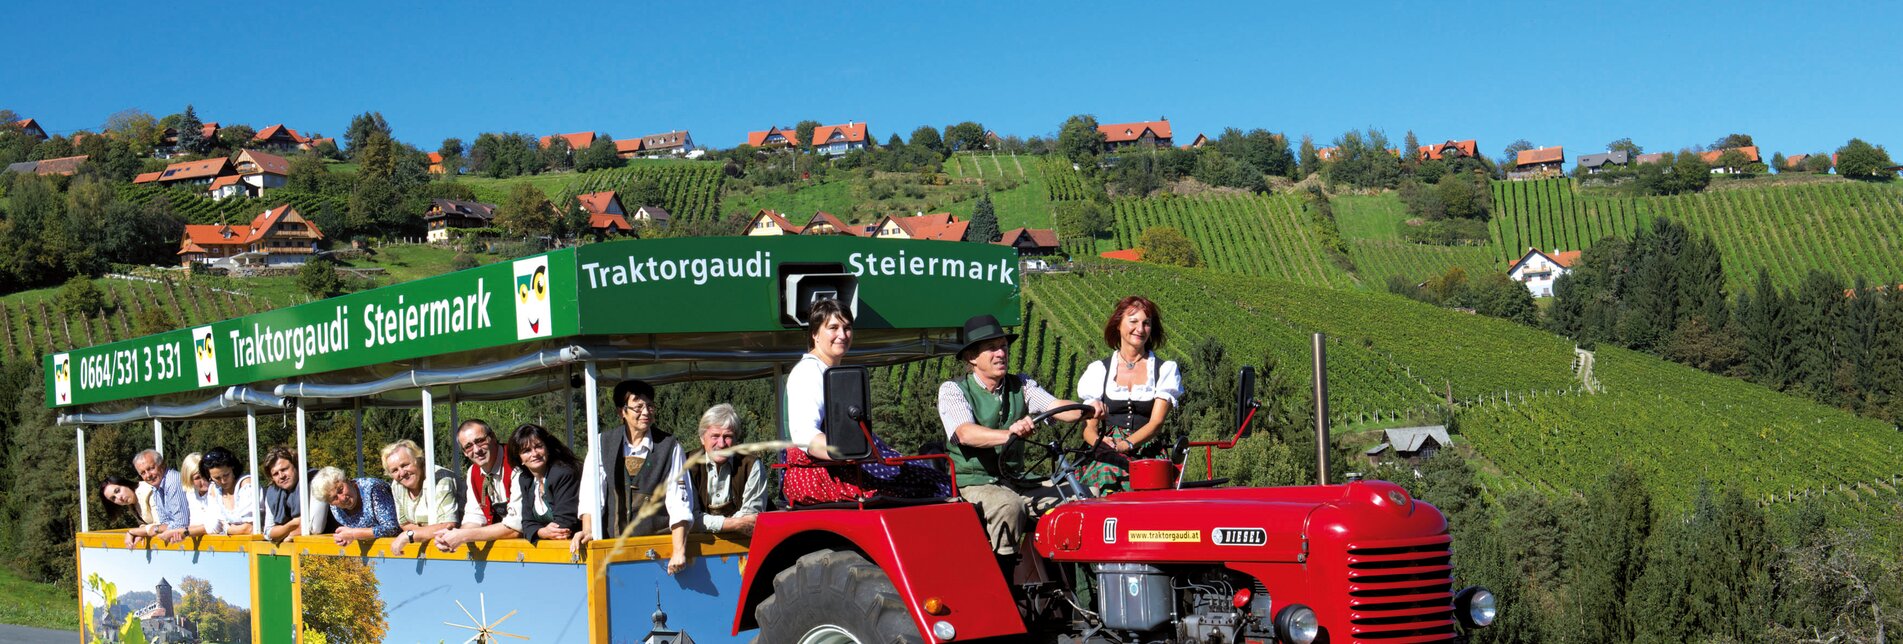 Gruppenausflug mit der Traktorgaudi Steiermark im Weinland | © Traktorgaudi Steiermark